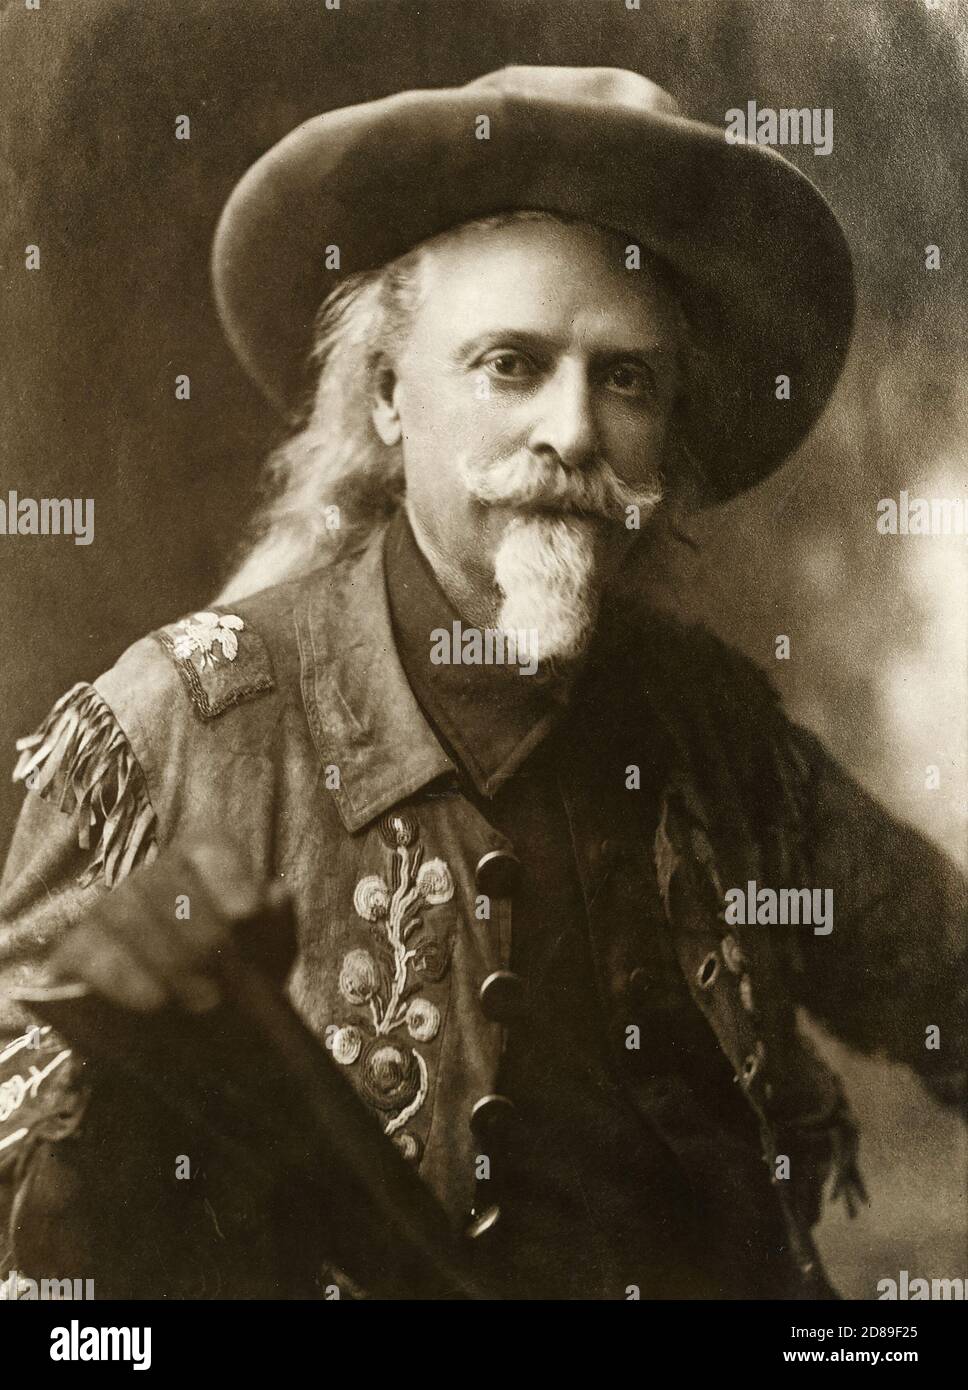 William F (Buffalo Bill) Cody, Leiter der Wild West Show. Studioportrait von Buffalo Bill in Hirschleder mit Native American-Zierperlen, c1909. Stockfoto